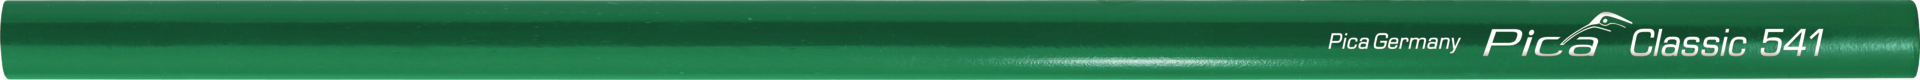 Steinhauerstift grün L300mm extra hart markiert auf Beton